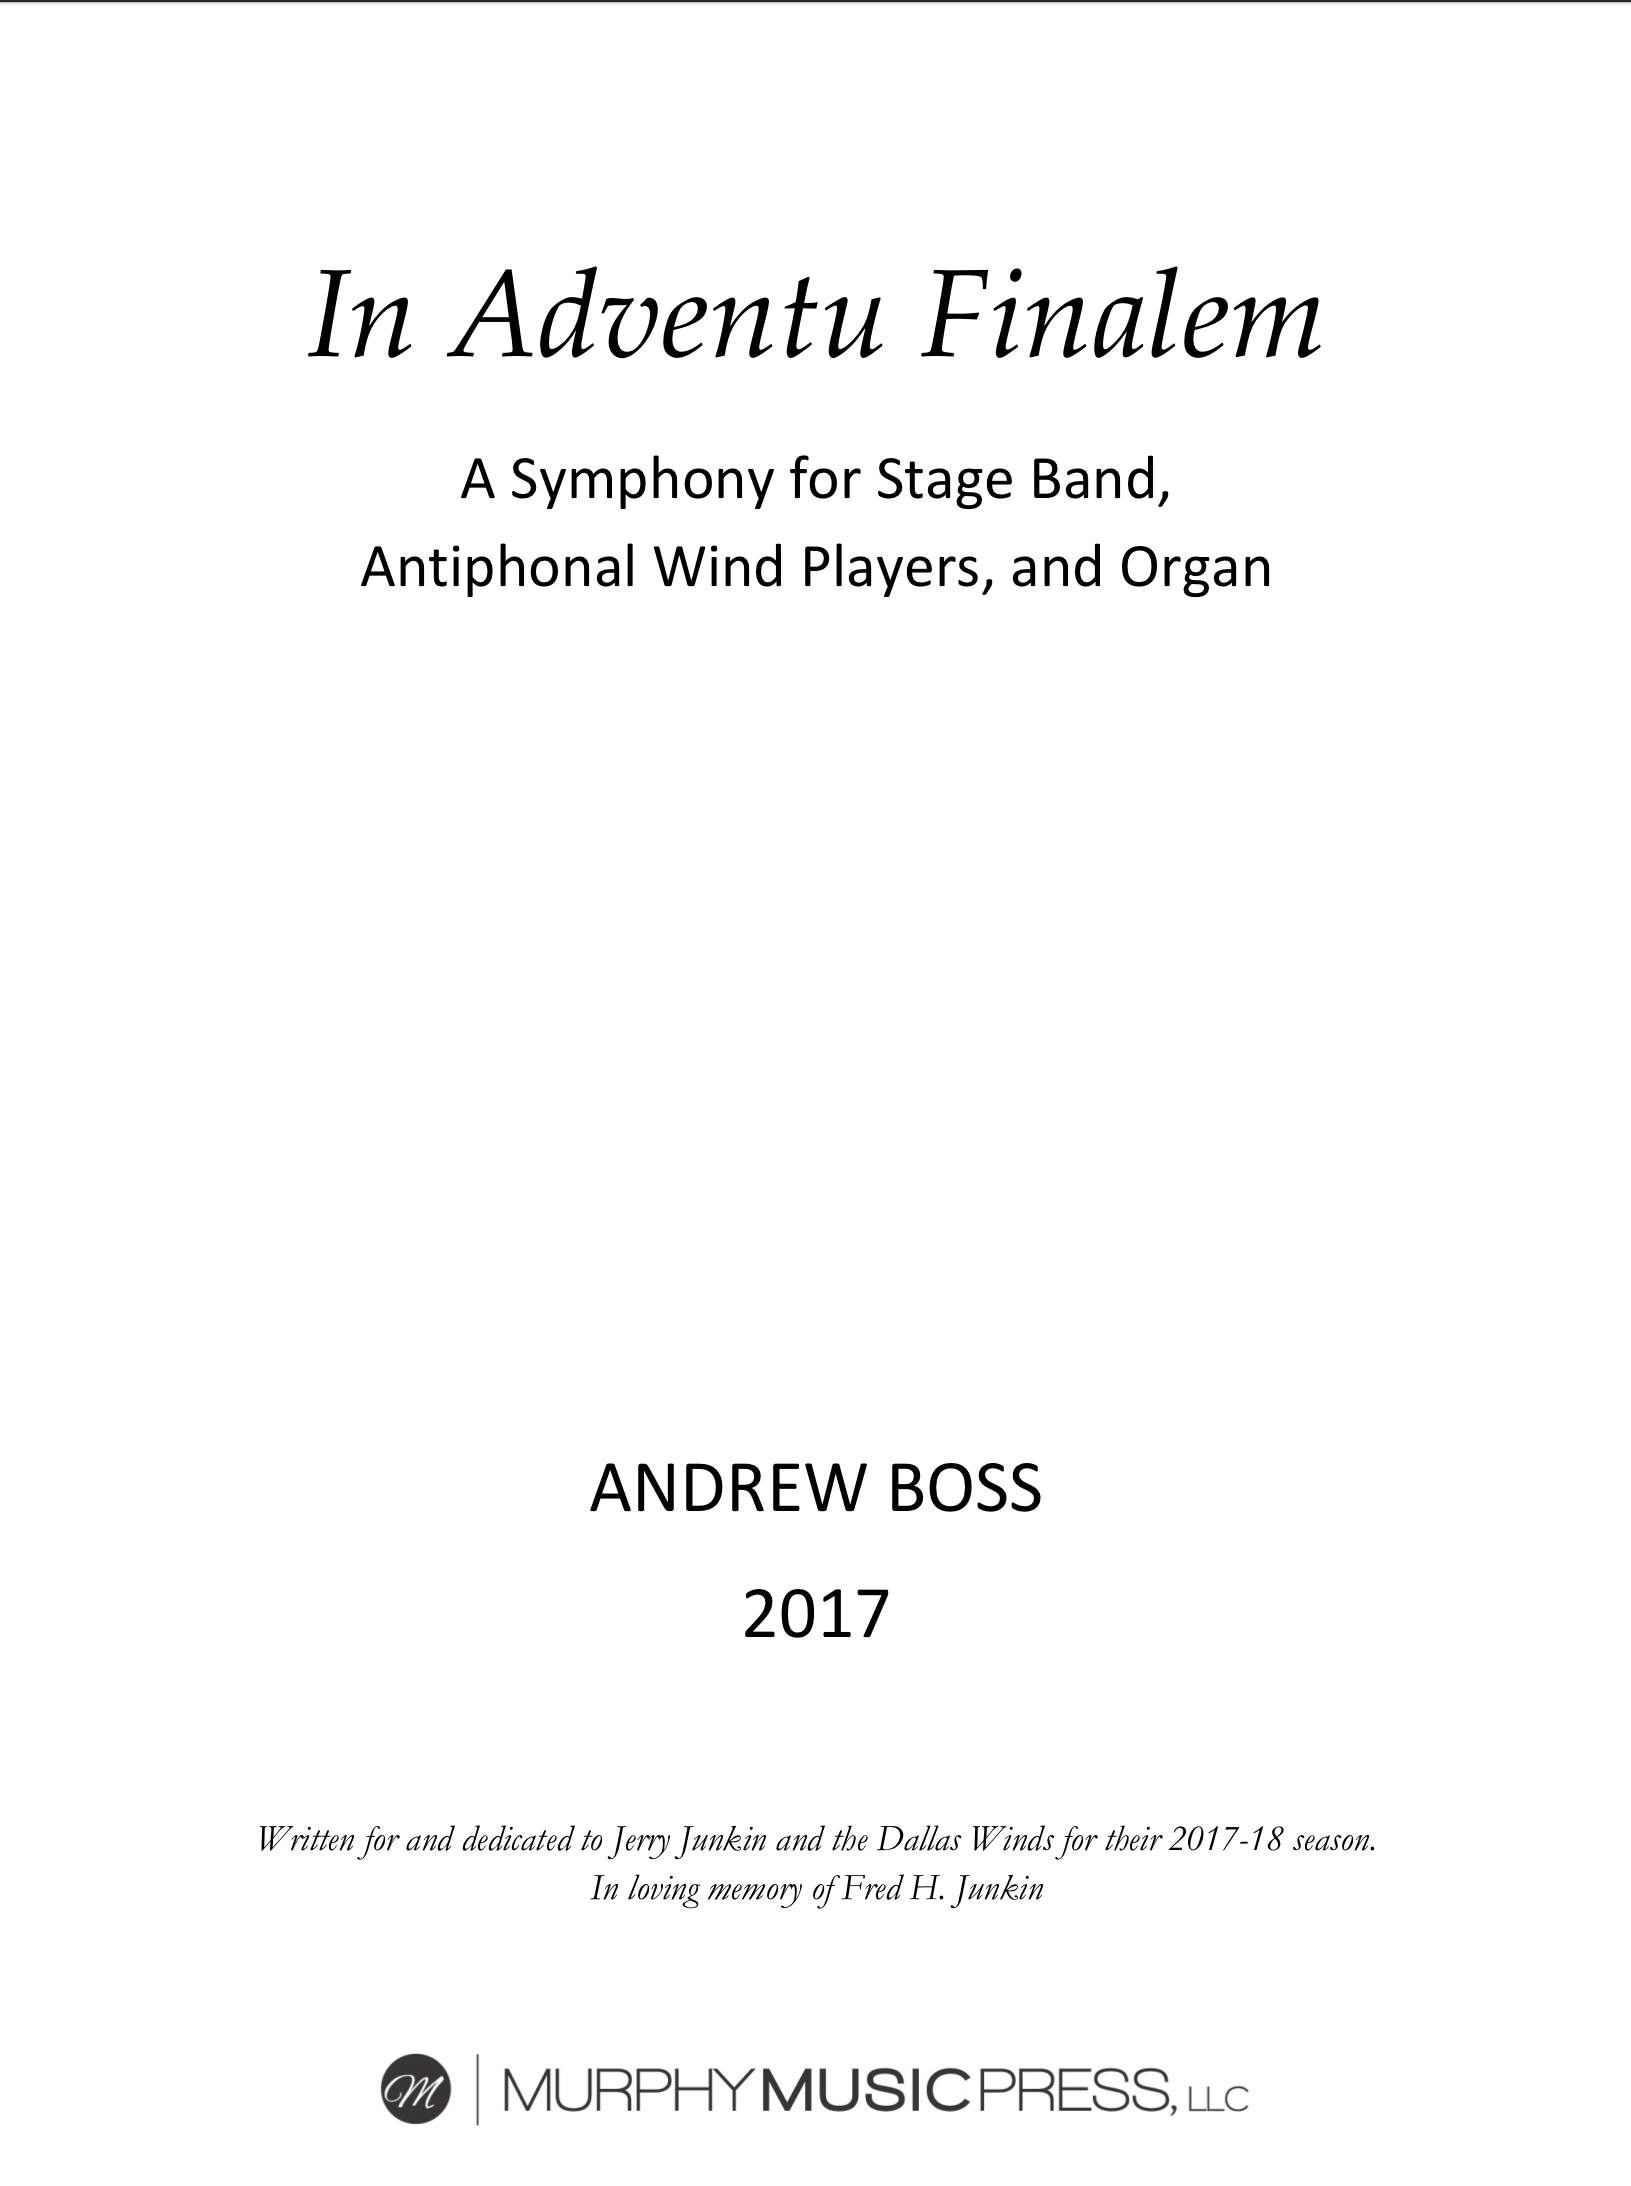 In Adventu Finalem (Study Score Only) by Andrew Boss 